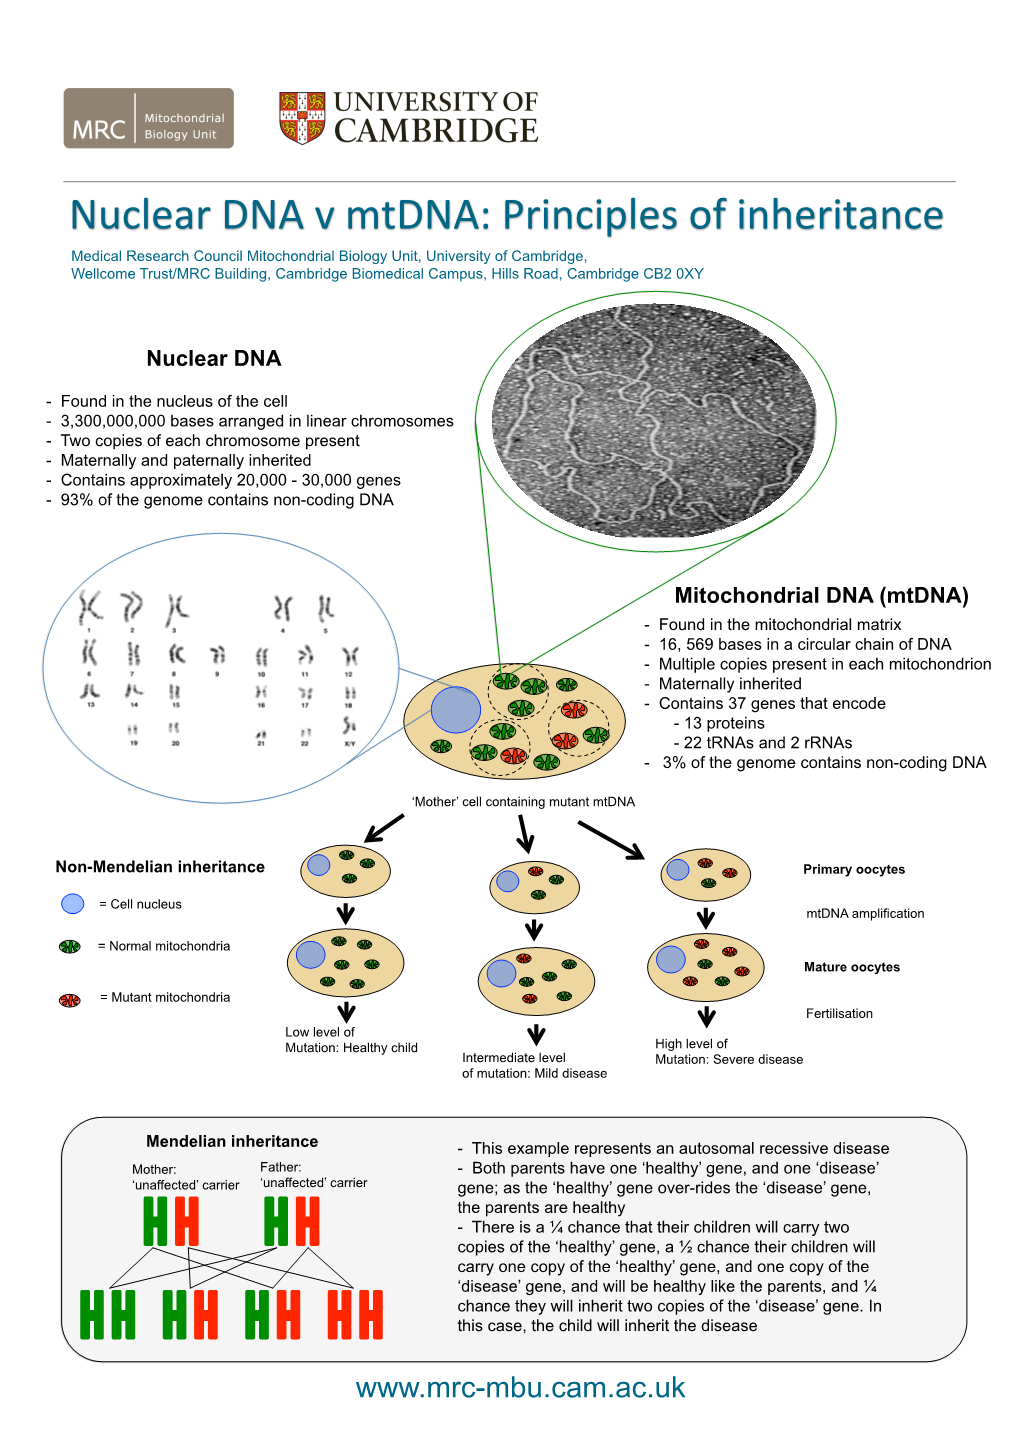 Nuclear DNA V Mtdna: Principles of Inheritance